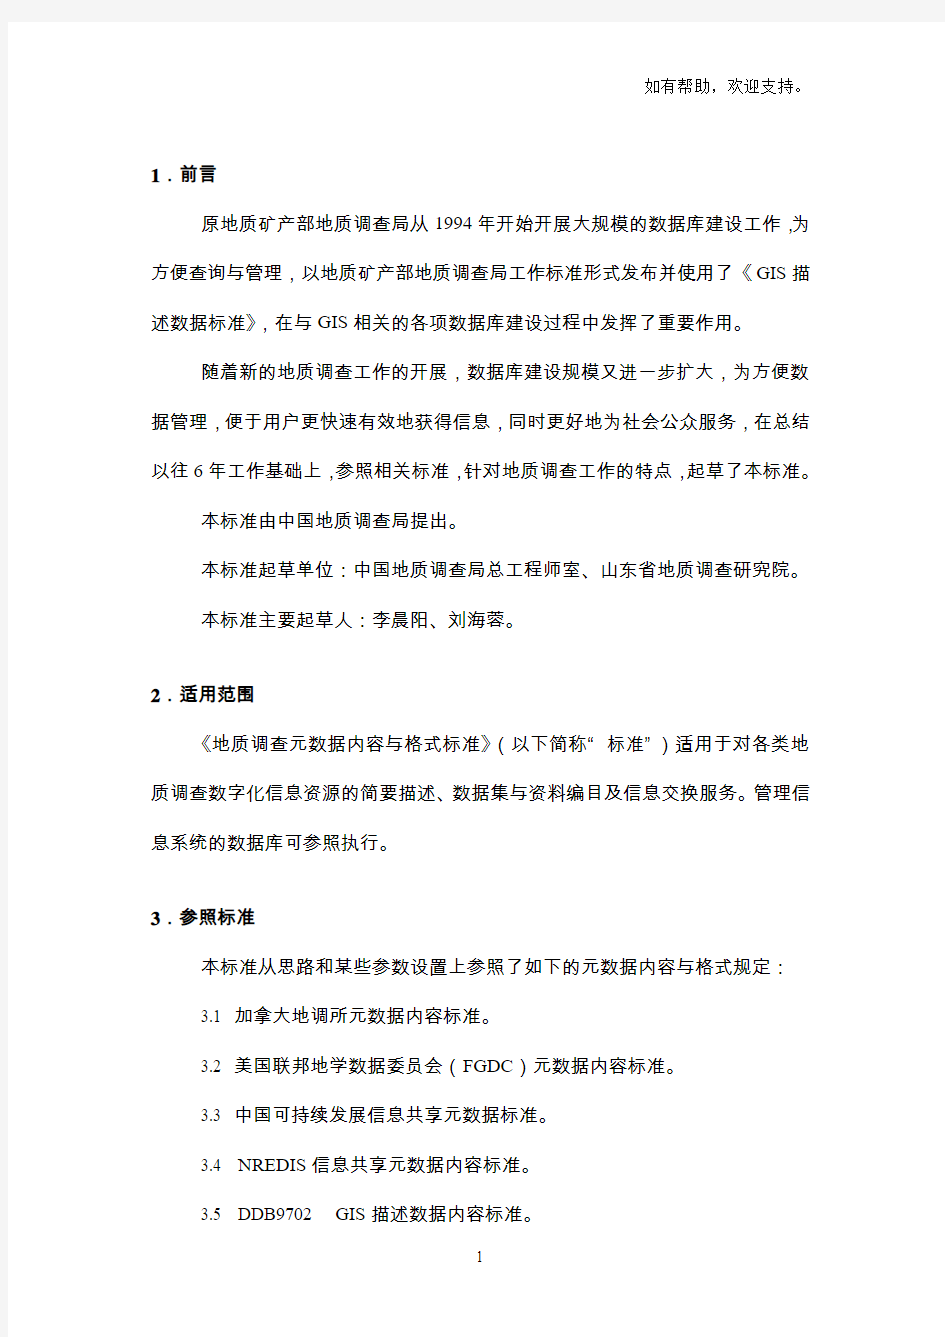 中国地质调查局工作标准(2)